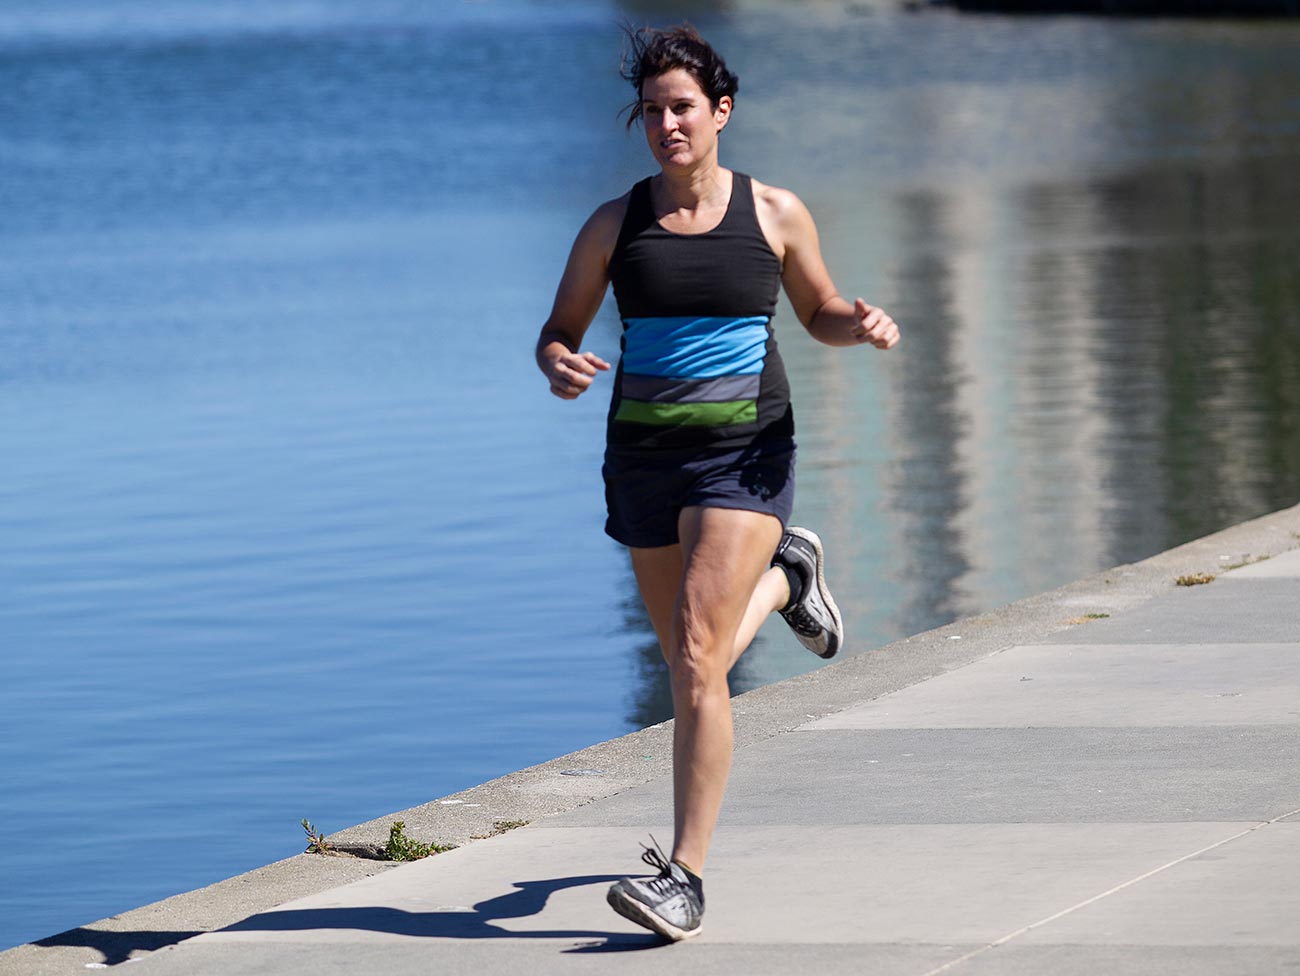 woman running next to lake